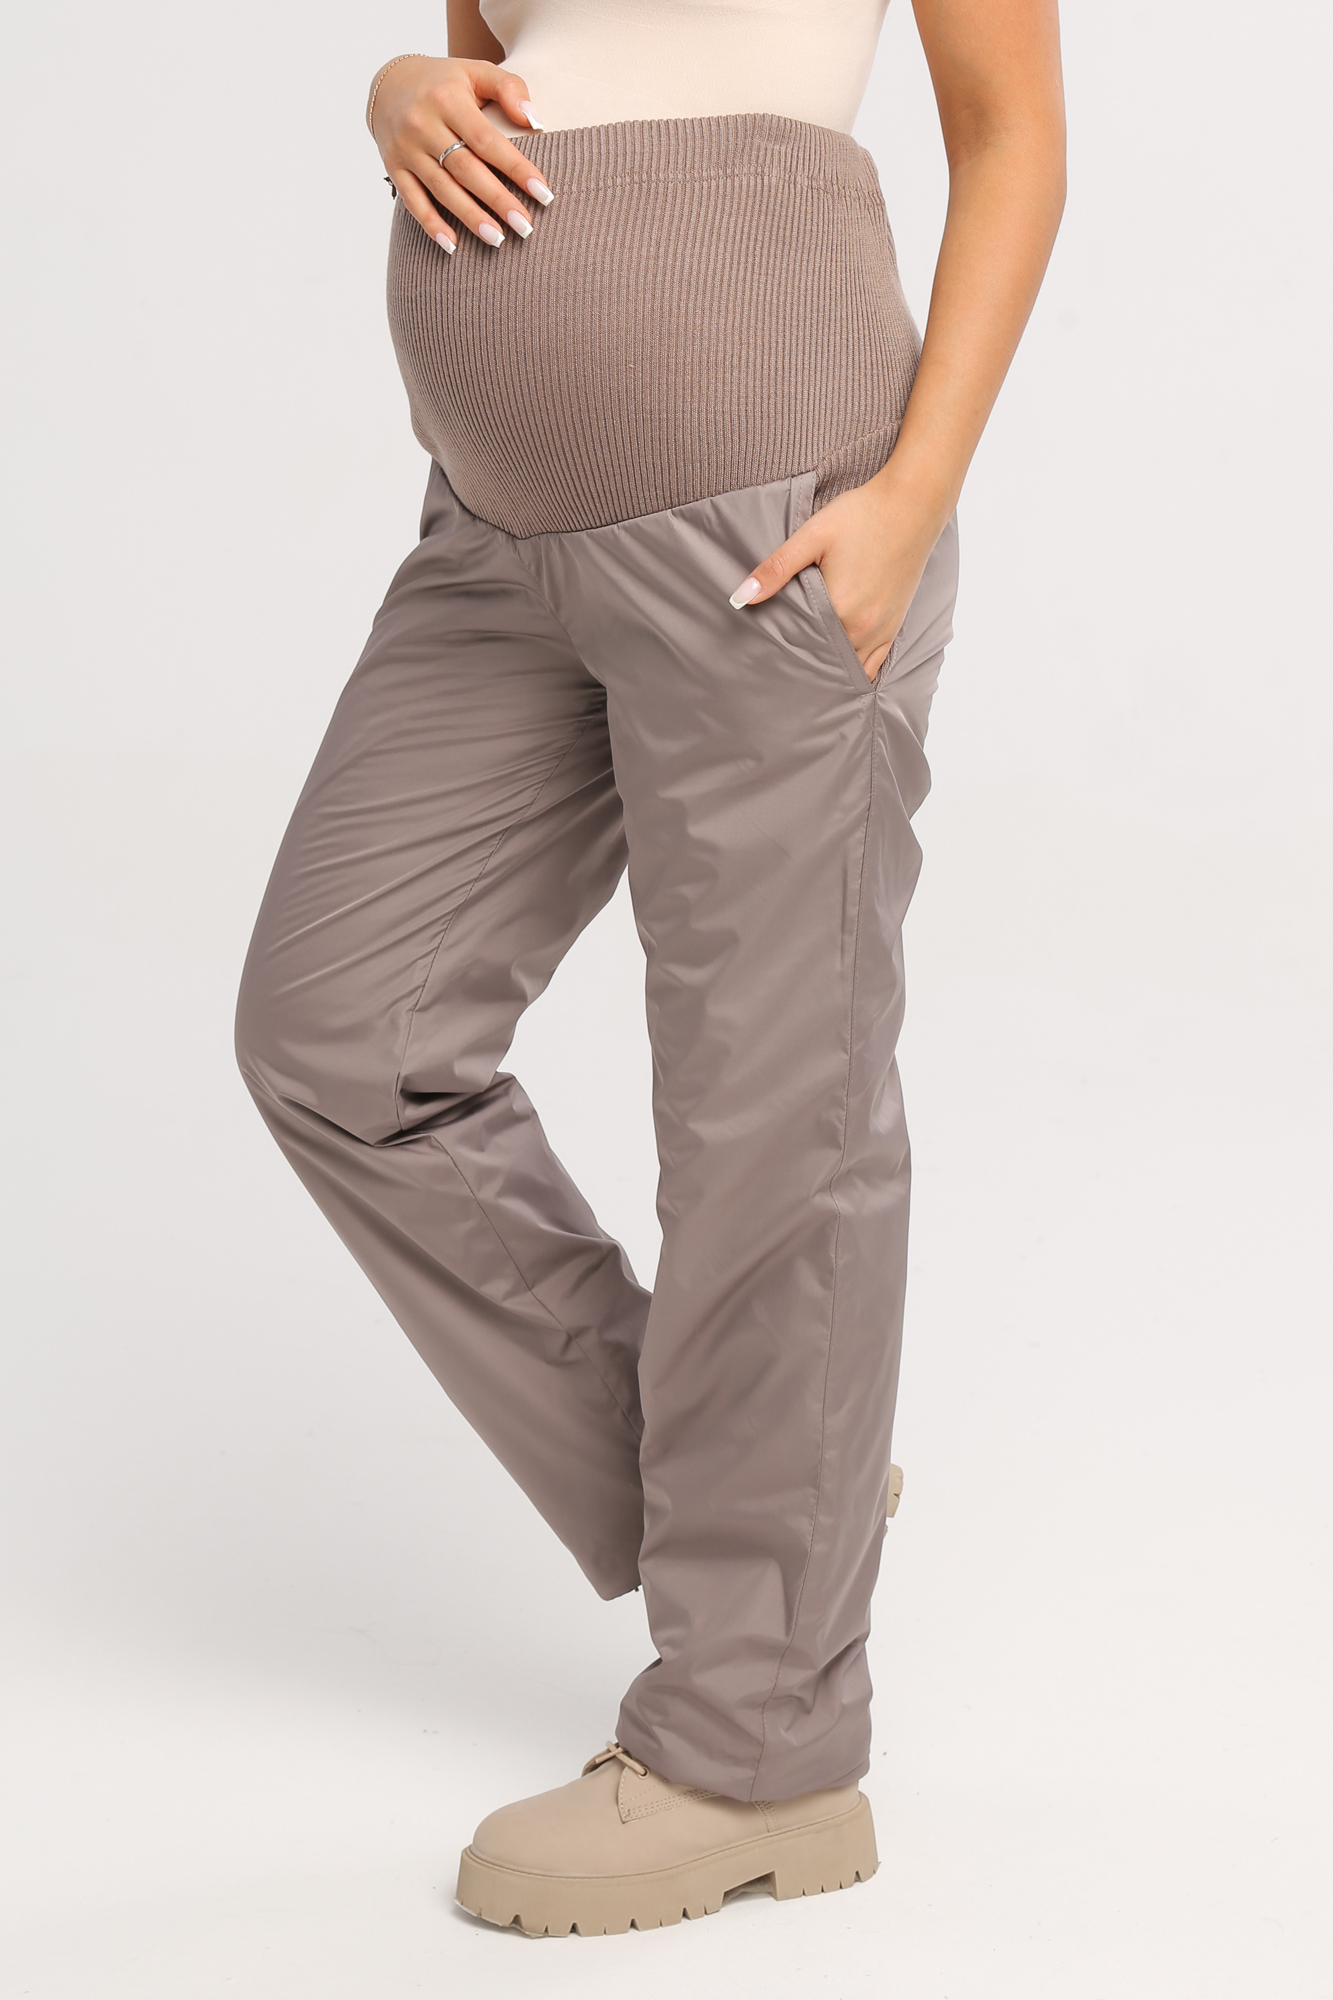 Как перешить брюки в брюки для беременных